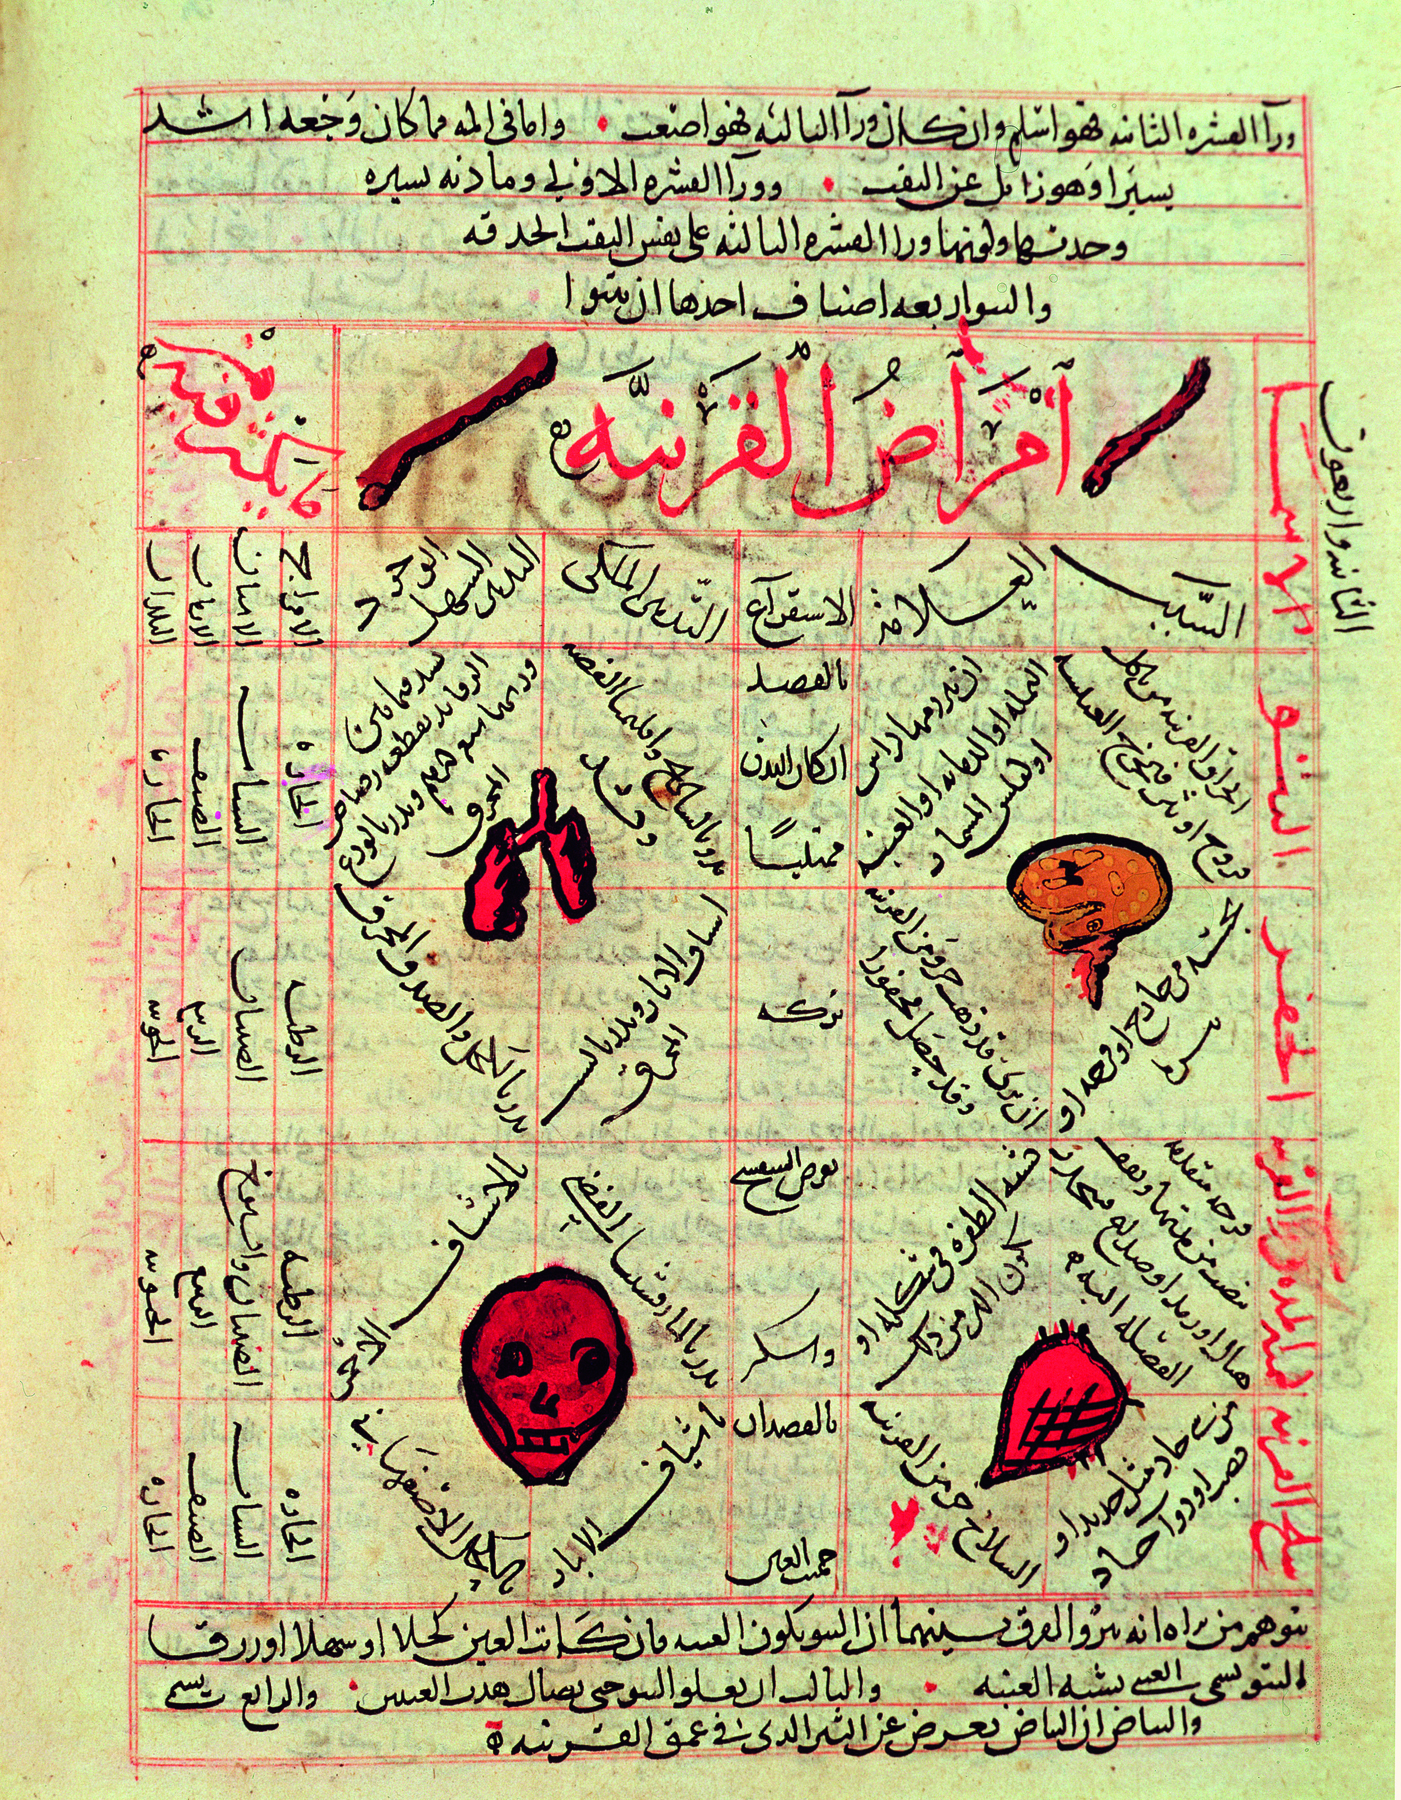 Página de livro. Página de  livro manuscrito de cor bege claro com ilustrações em tons de vermelho e laranja representando órgãos do corpo humano como ossos, pulmões, face e outros. Entre as ilustrações, linhas em vermelho, e inscrições com o alfabeto árabe, em vermelho e e preto.